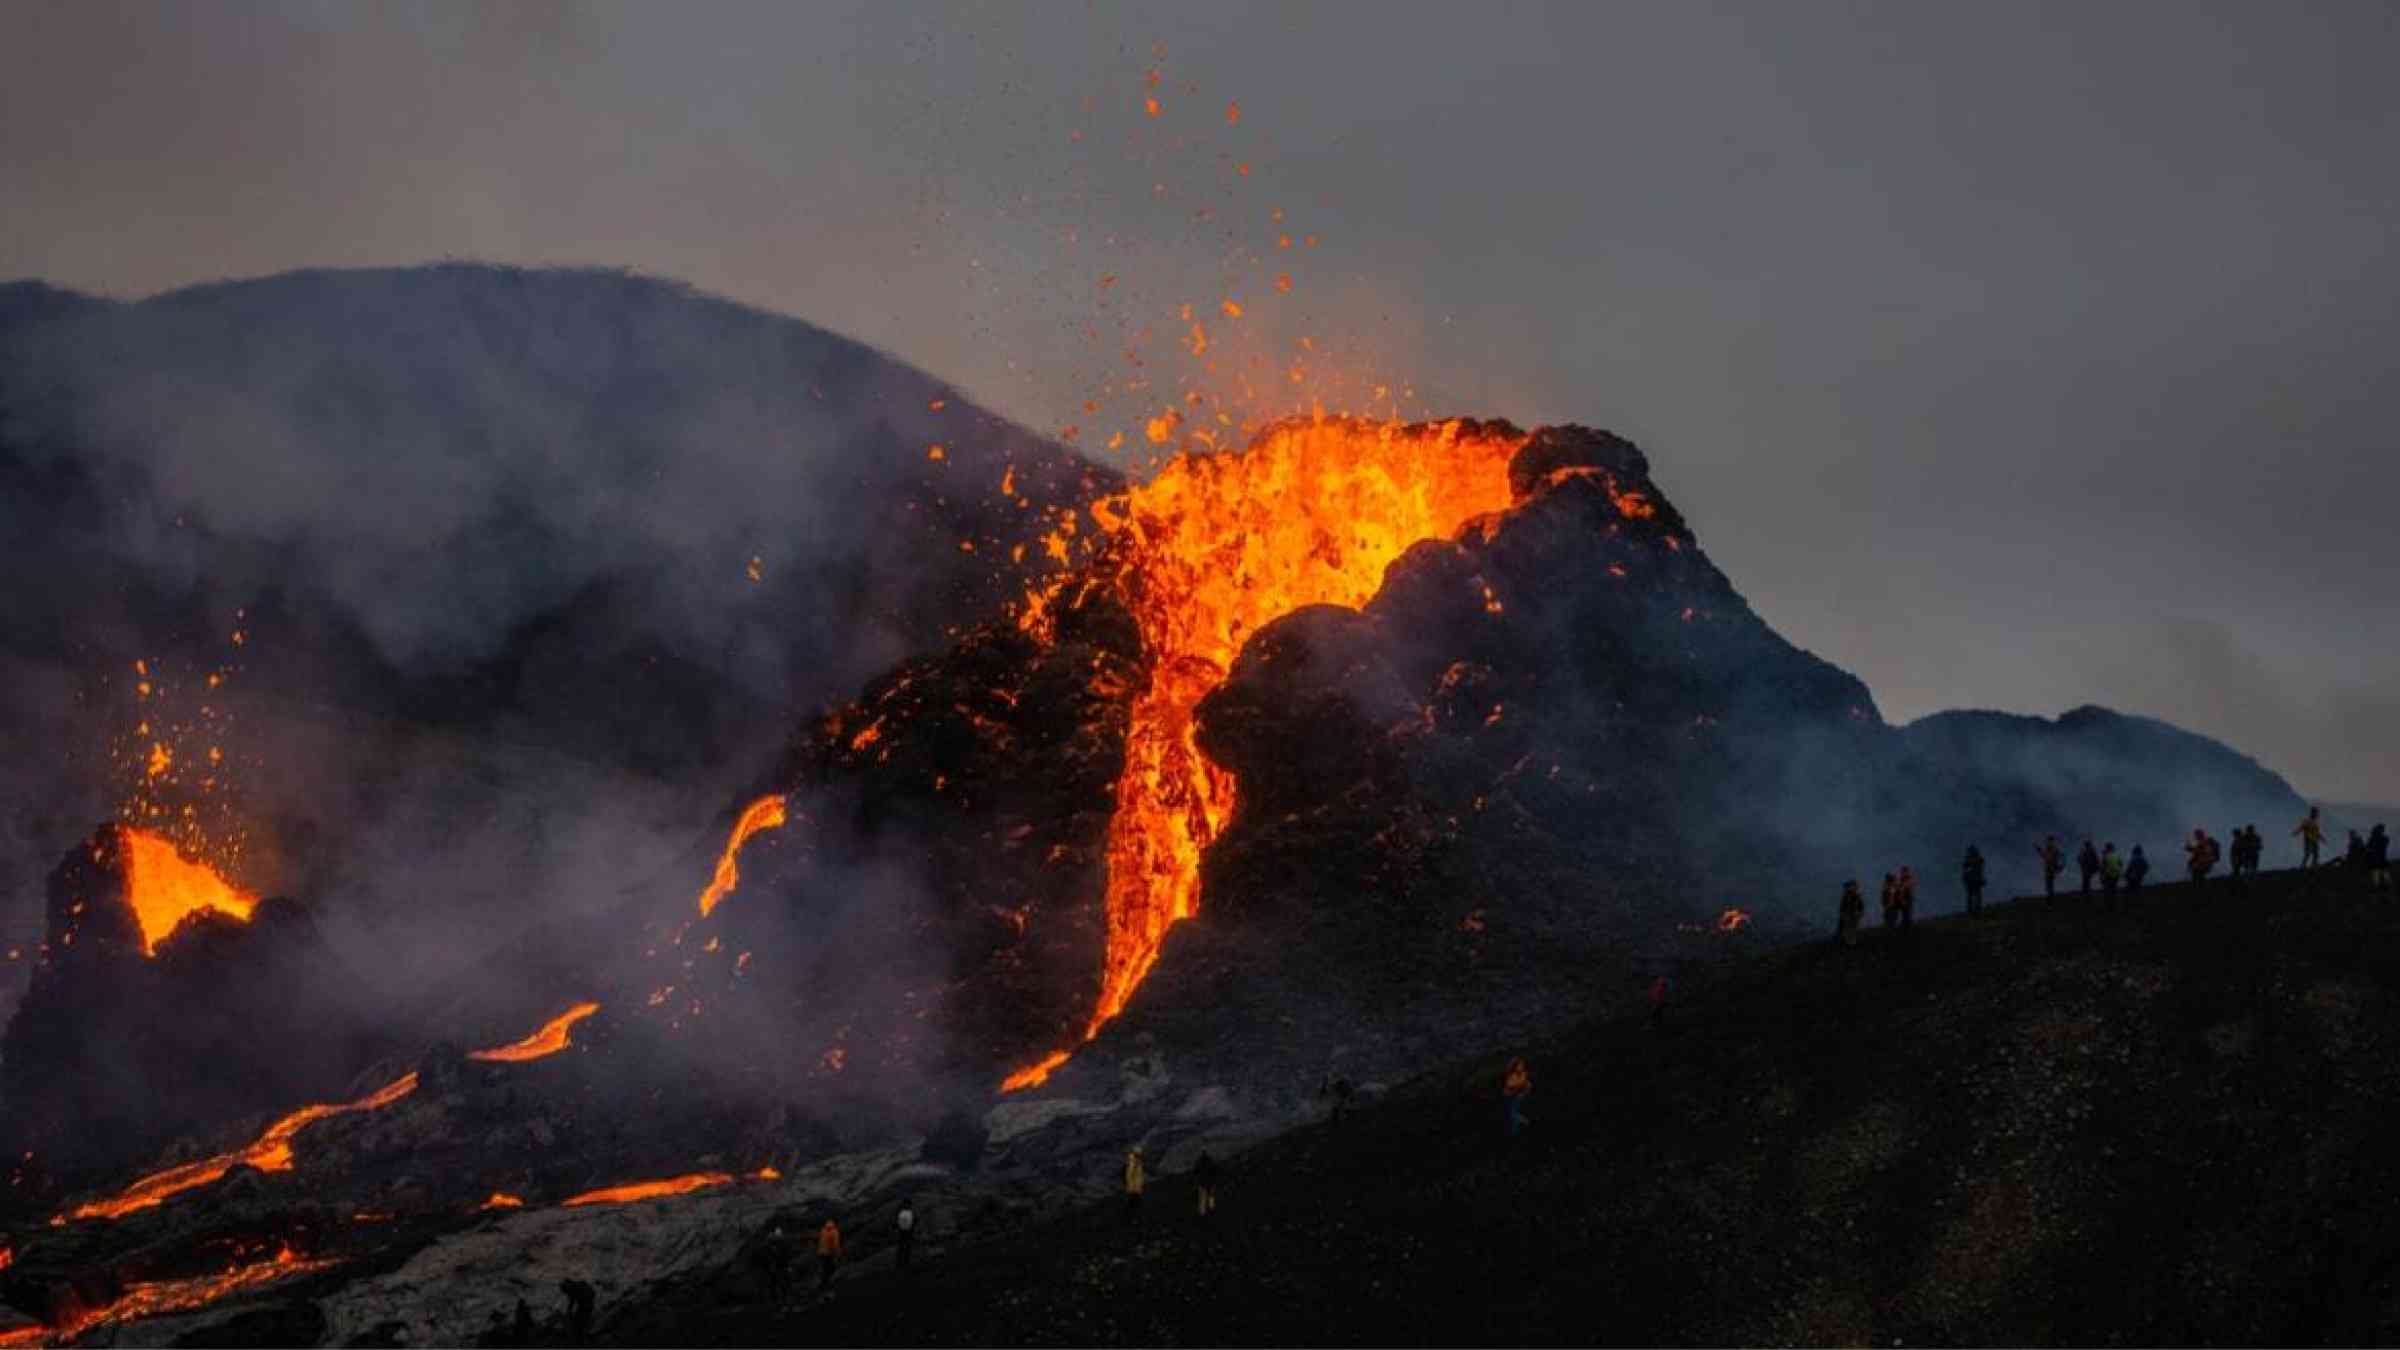 Mt. Fagradalsfjall erupting in Grindavík, Iceland